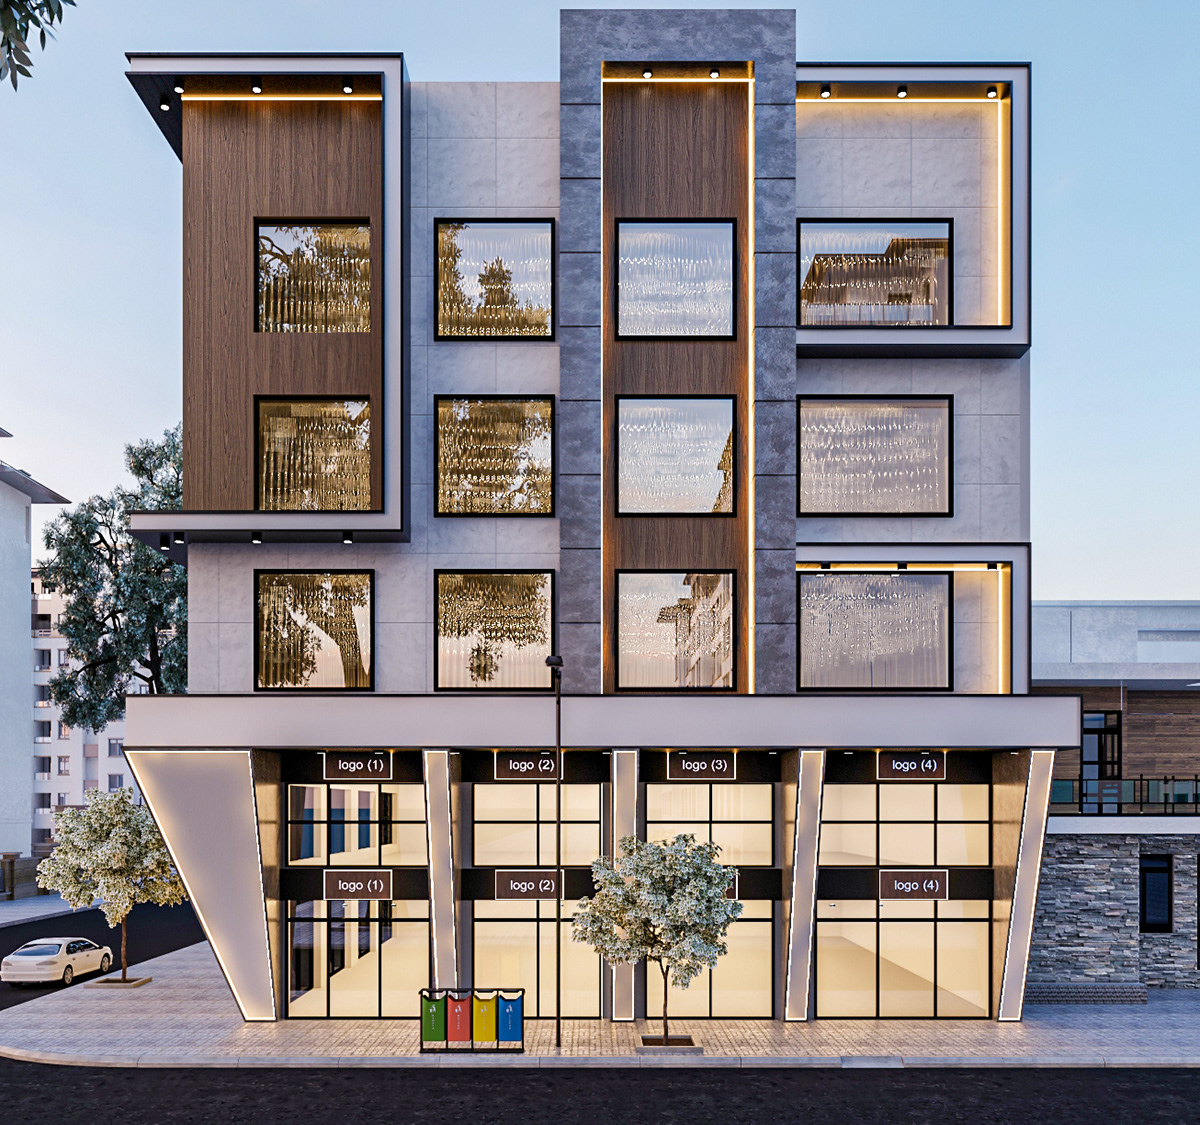 Facade design facade facades modern architecture exterior Render vray 3ds max visualization